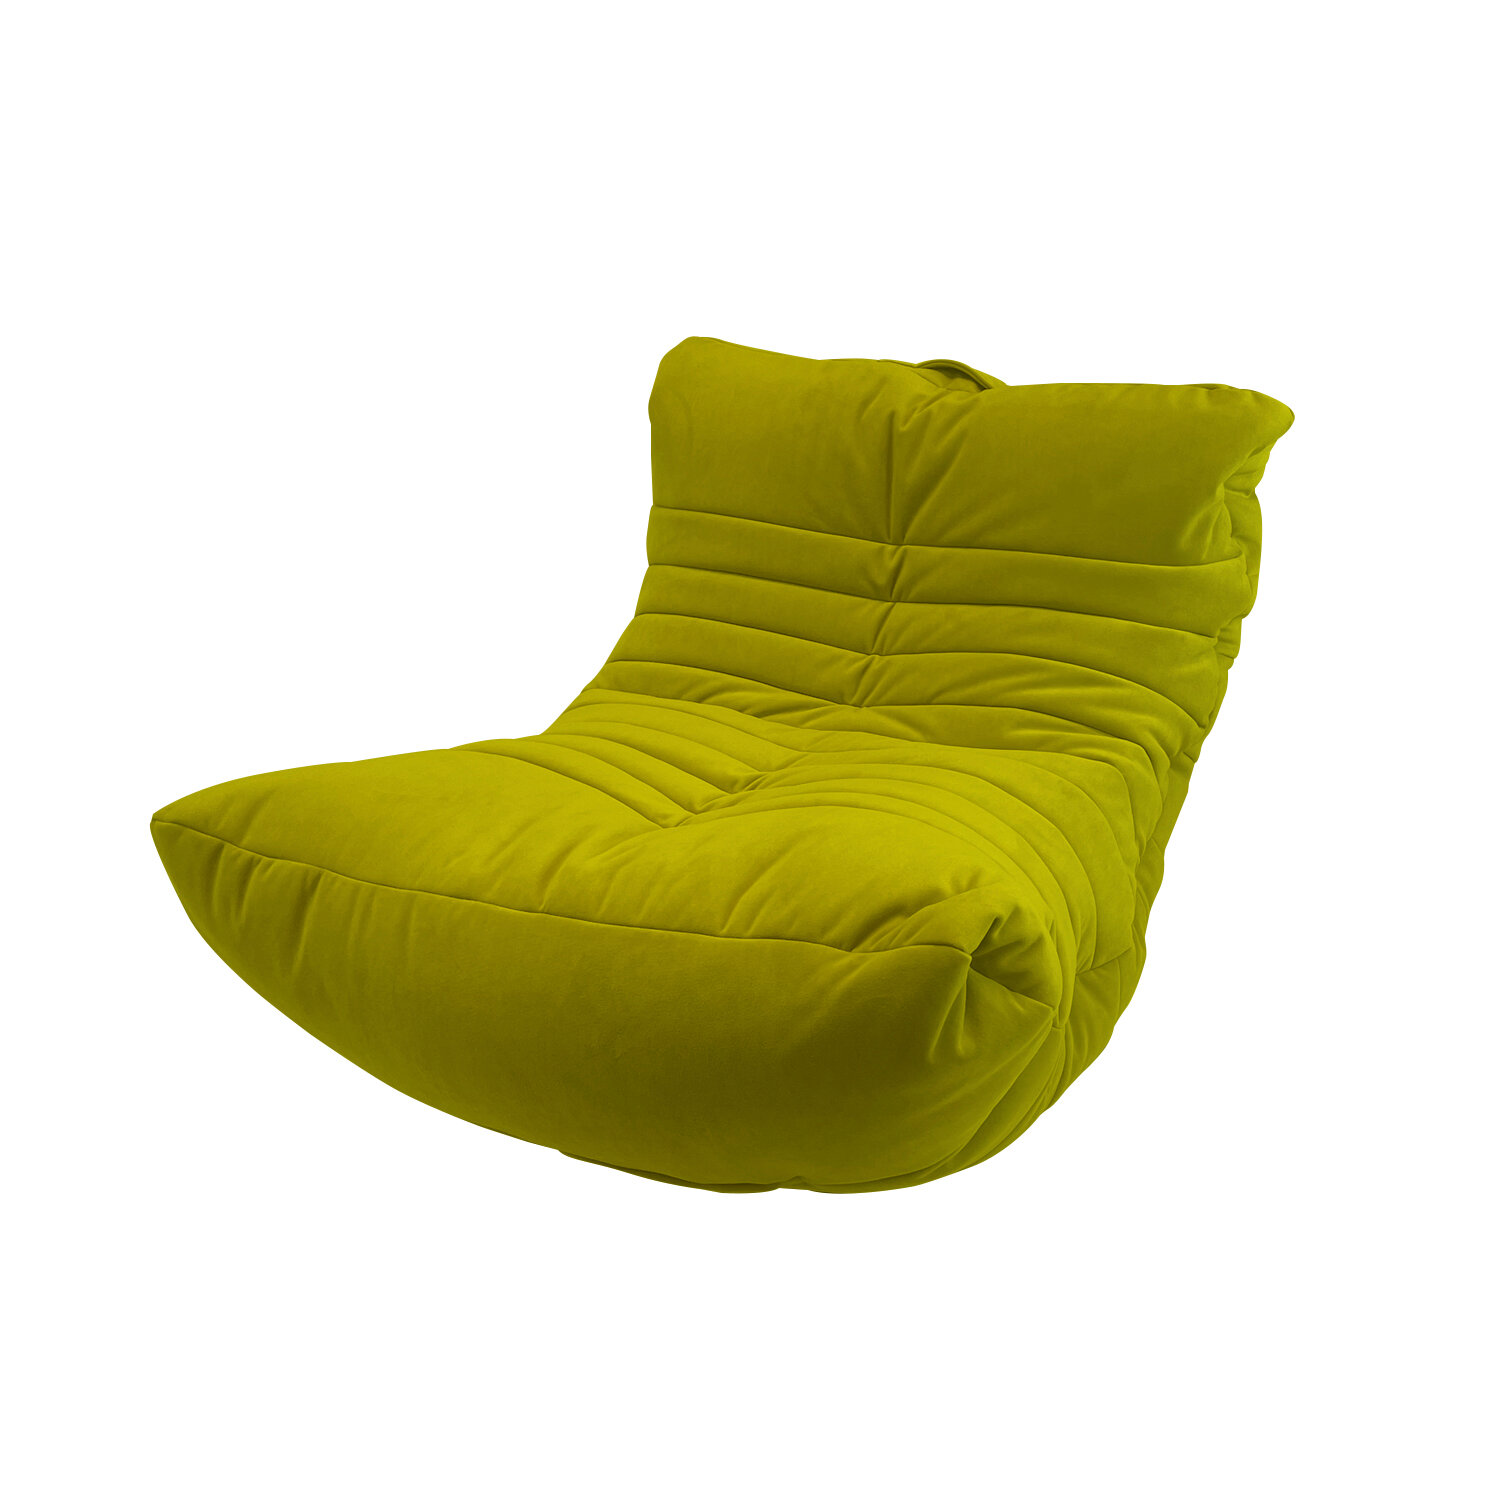 Современное кресло для отдыха aLounge - Acoustic Sofa - Lime Citrus (Велюр) - мягкая мебель в гостиную, детскую, спальню, на балкон - фотография № 8